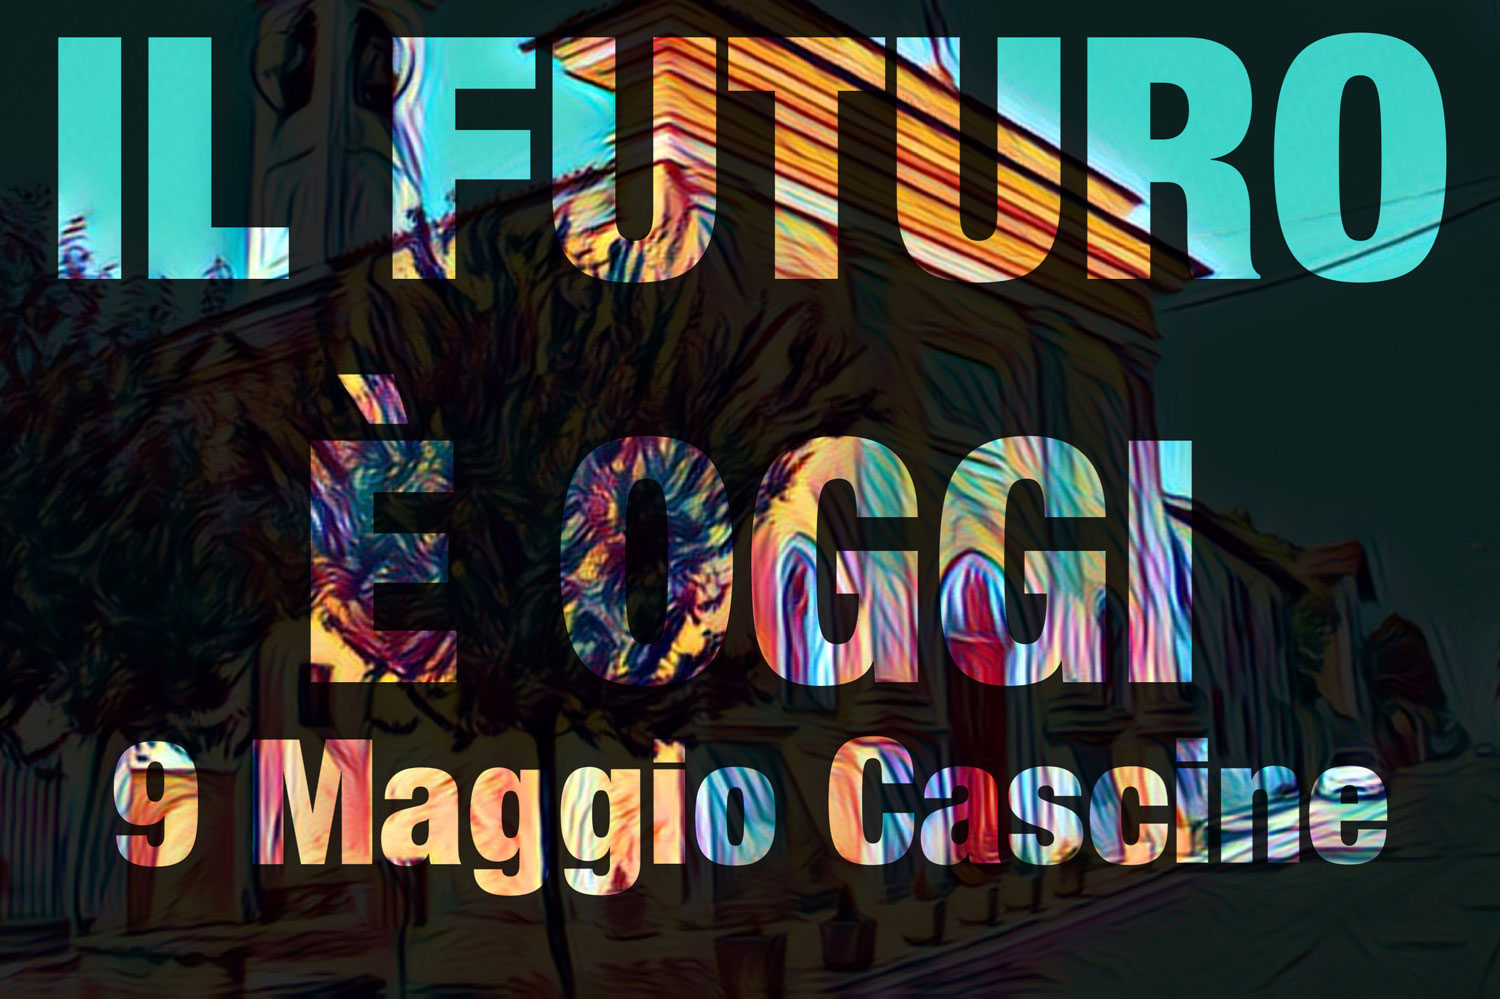 Cascine-Calederari-9-Maggio-cover